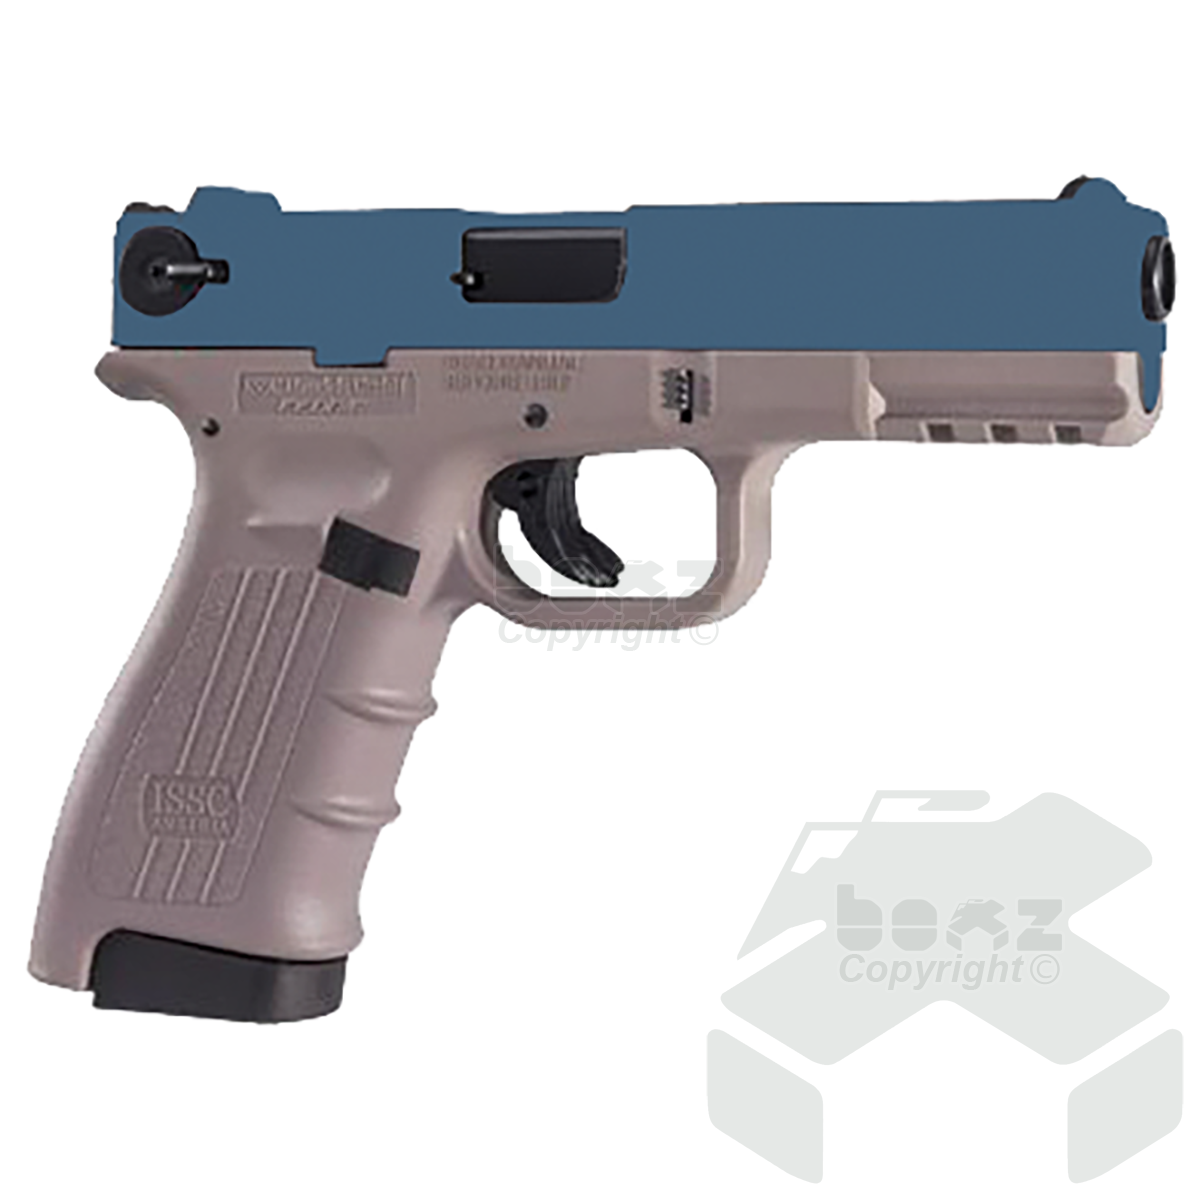 Ceonic M22 Blank Firing Pistol - 9mm - Blue Daybreak